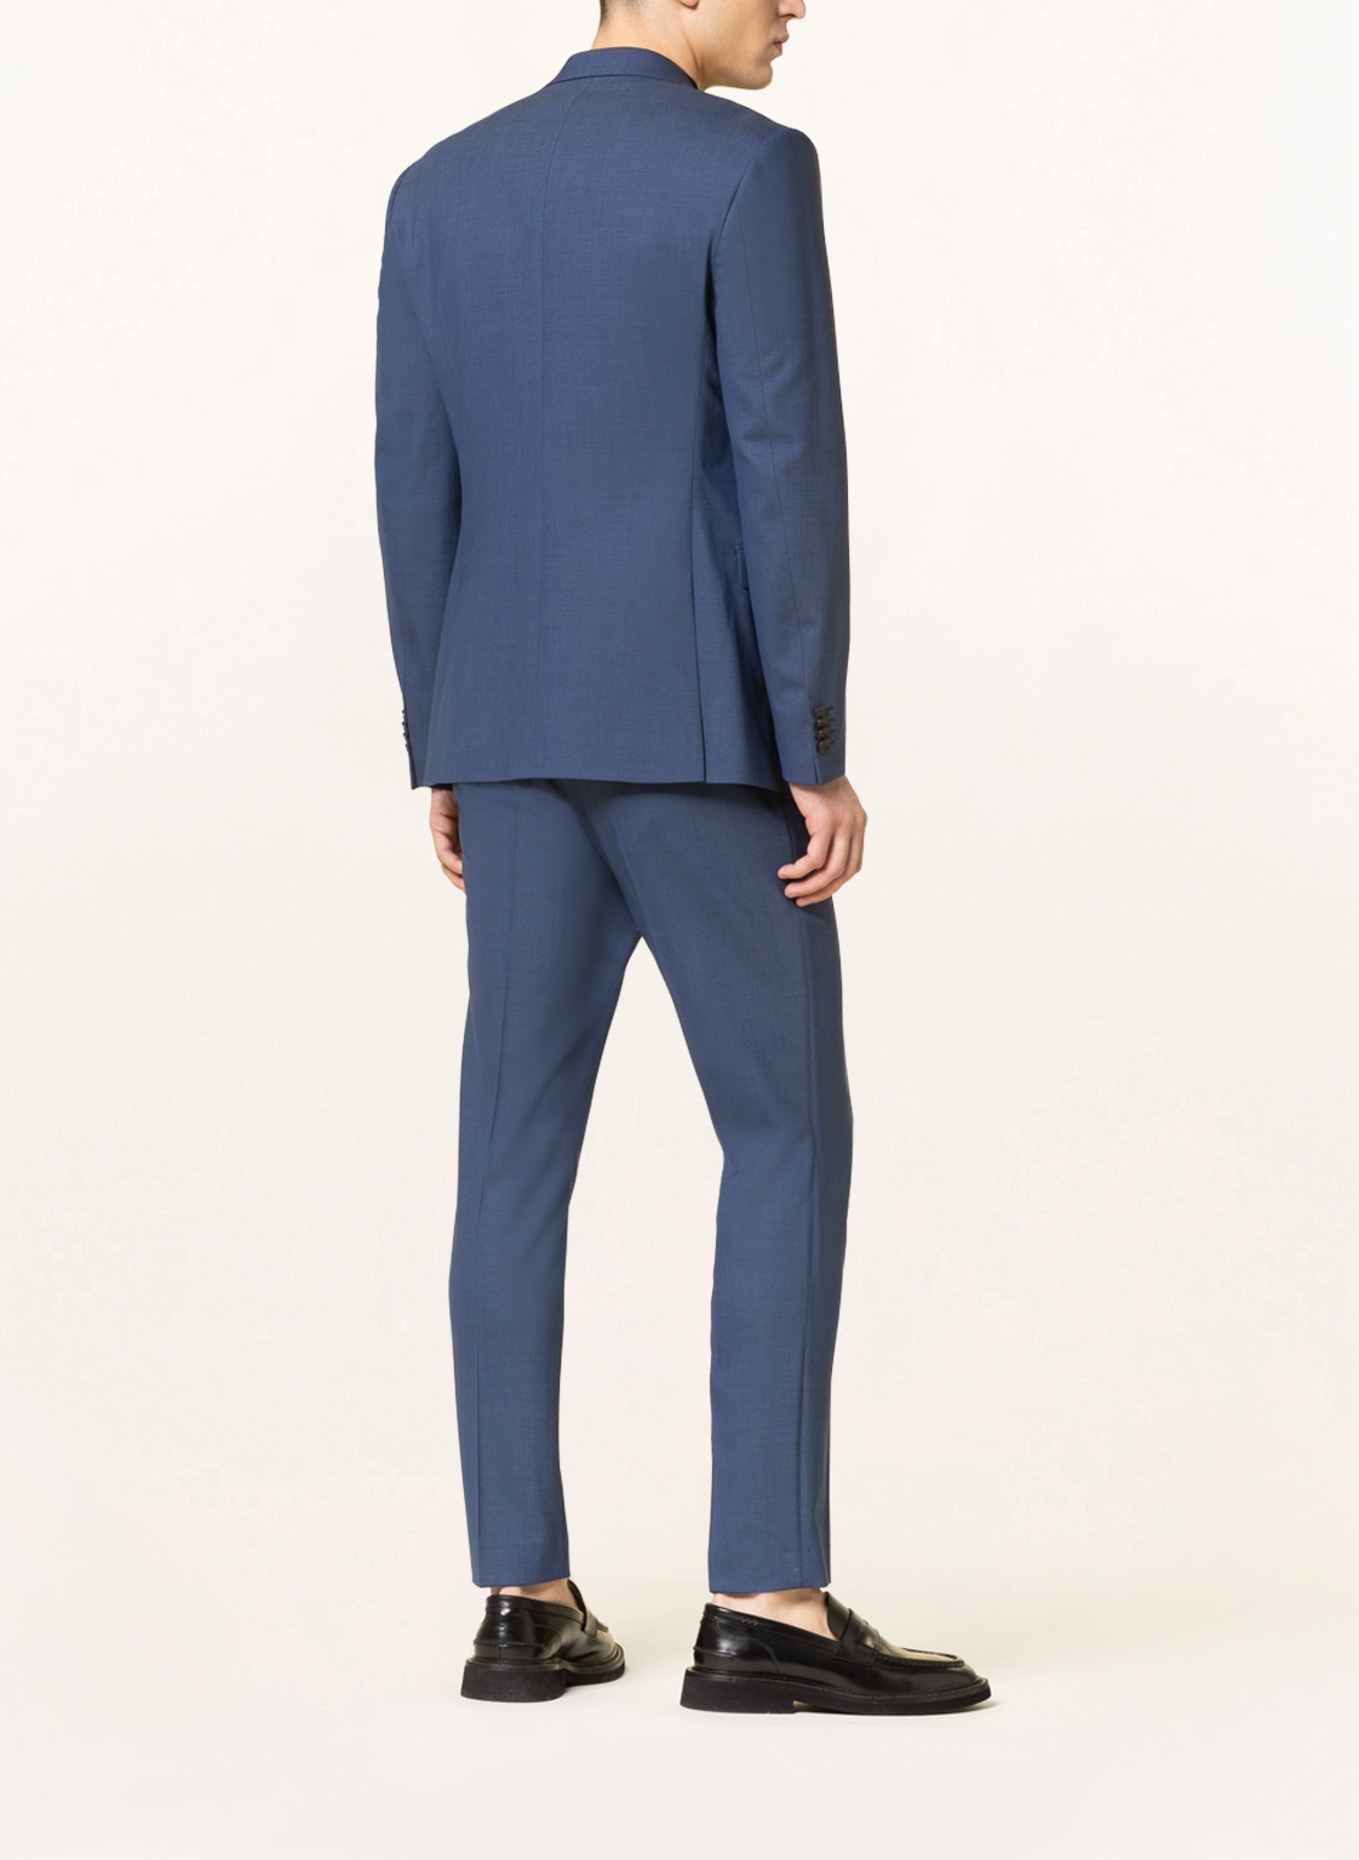 TIGER OF SWEDEN Suit jacket JAMONTE extra slim fit, Color: DARK BLUE (Image 3)